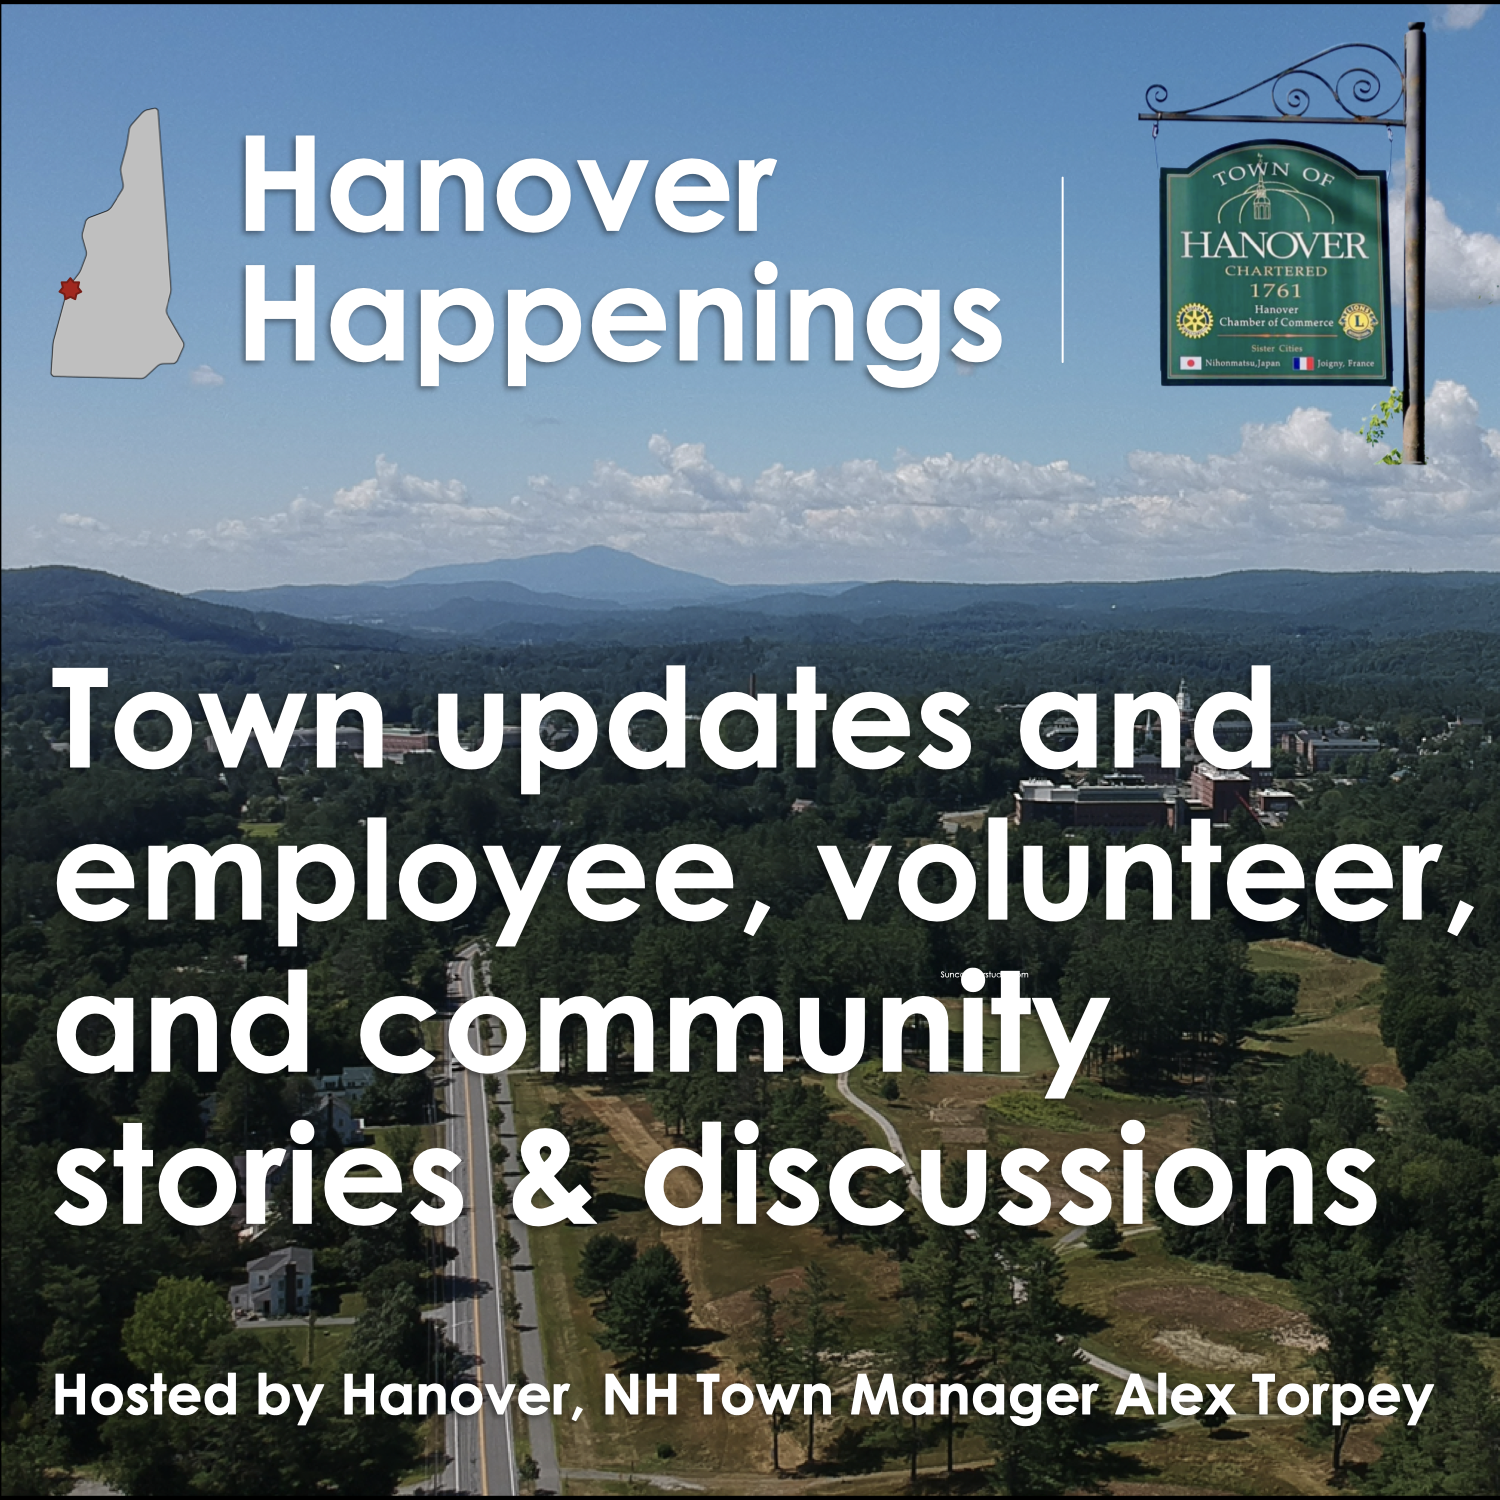 Employee Spotlight: Let's meet Hanover's emergency 911 dispatchers